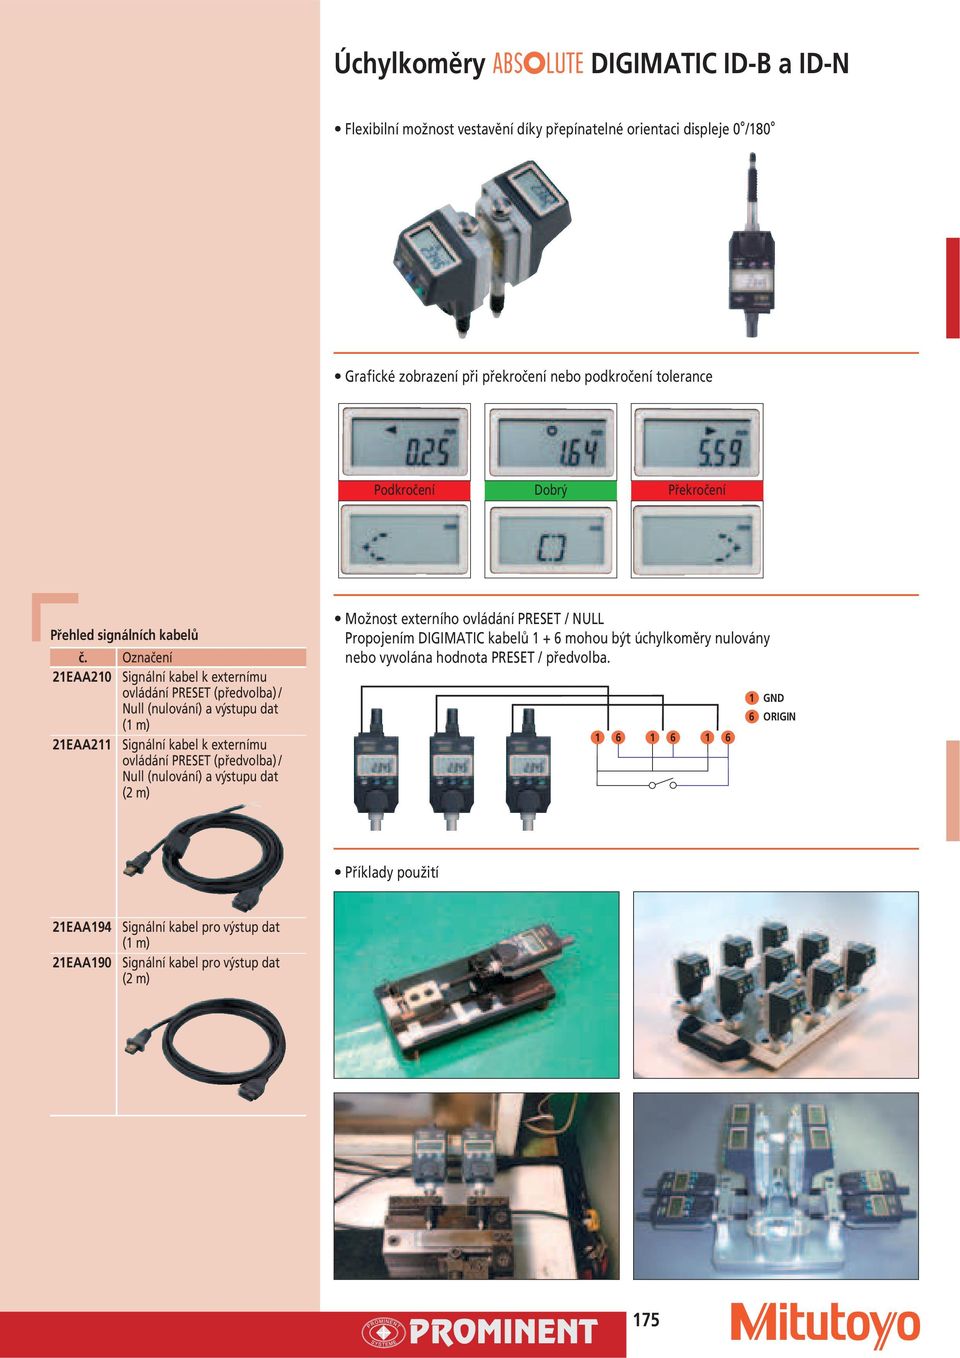 kabel k externímu ovládání PRESET (předvolba) / ull (nulování) a výstupu dat (2 m) Možnost externího ovládání PRESET / ULL Propojením DIGIMATIC kabelů 1 + 6 mohou být